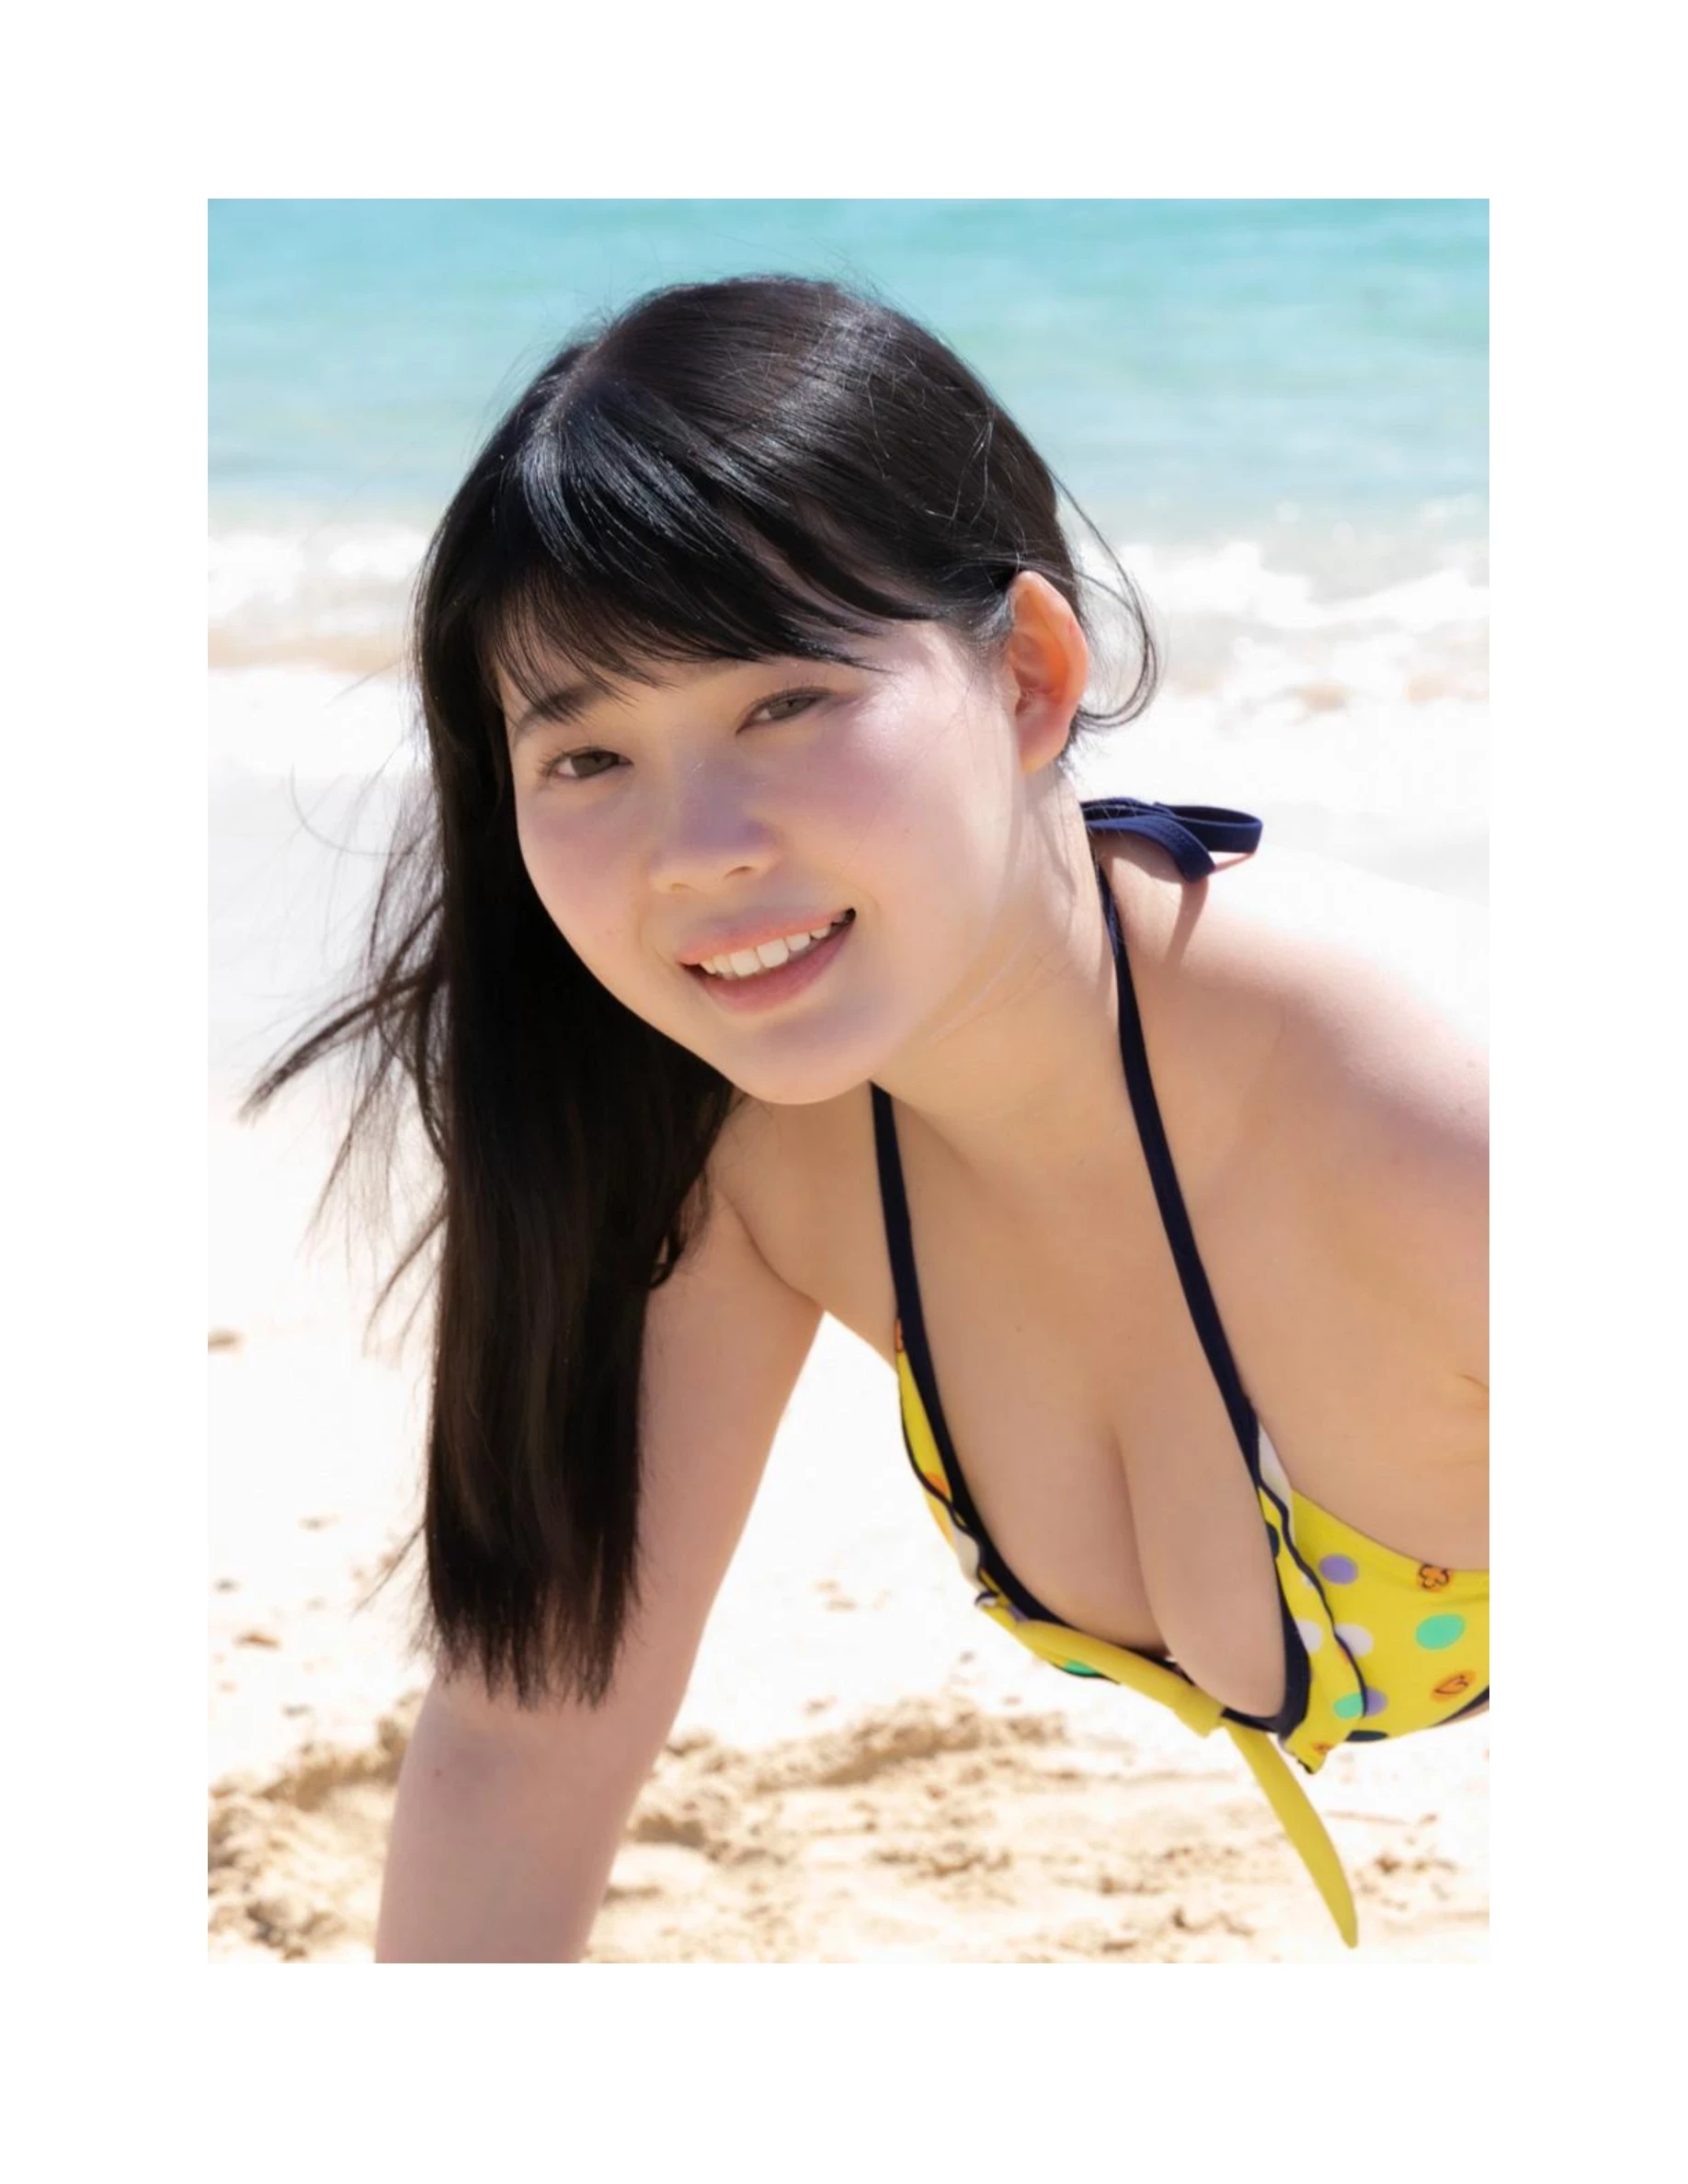 伊川愛梨 卒業旅行 夏 寫真集 J罩杯偶像美少女傳説-399